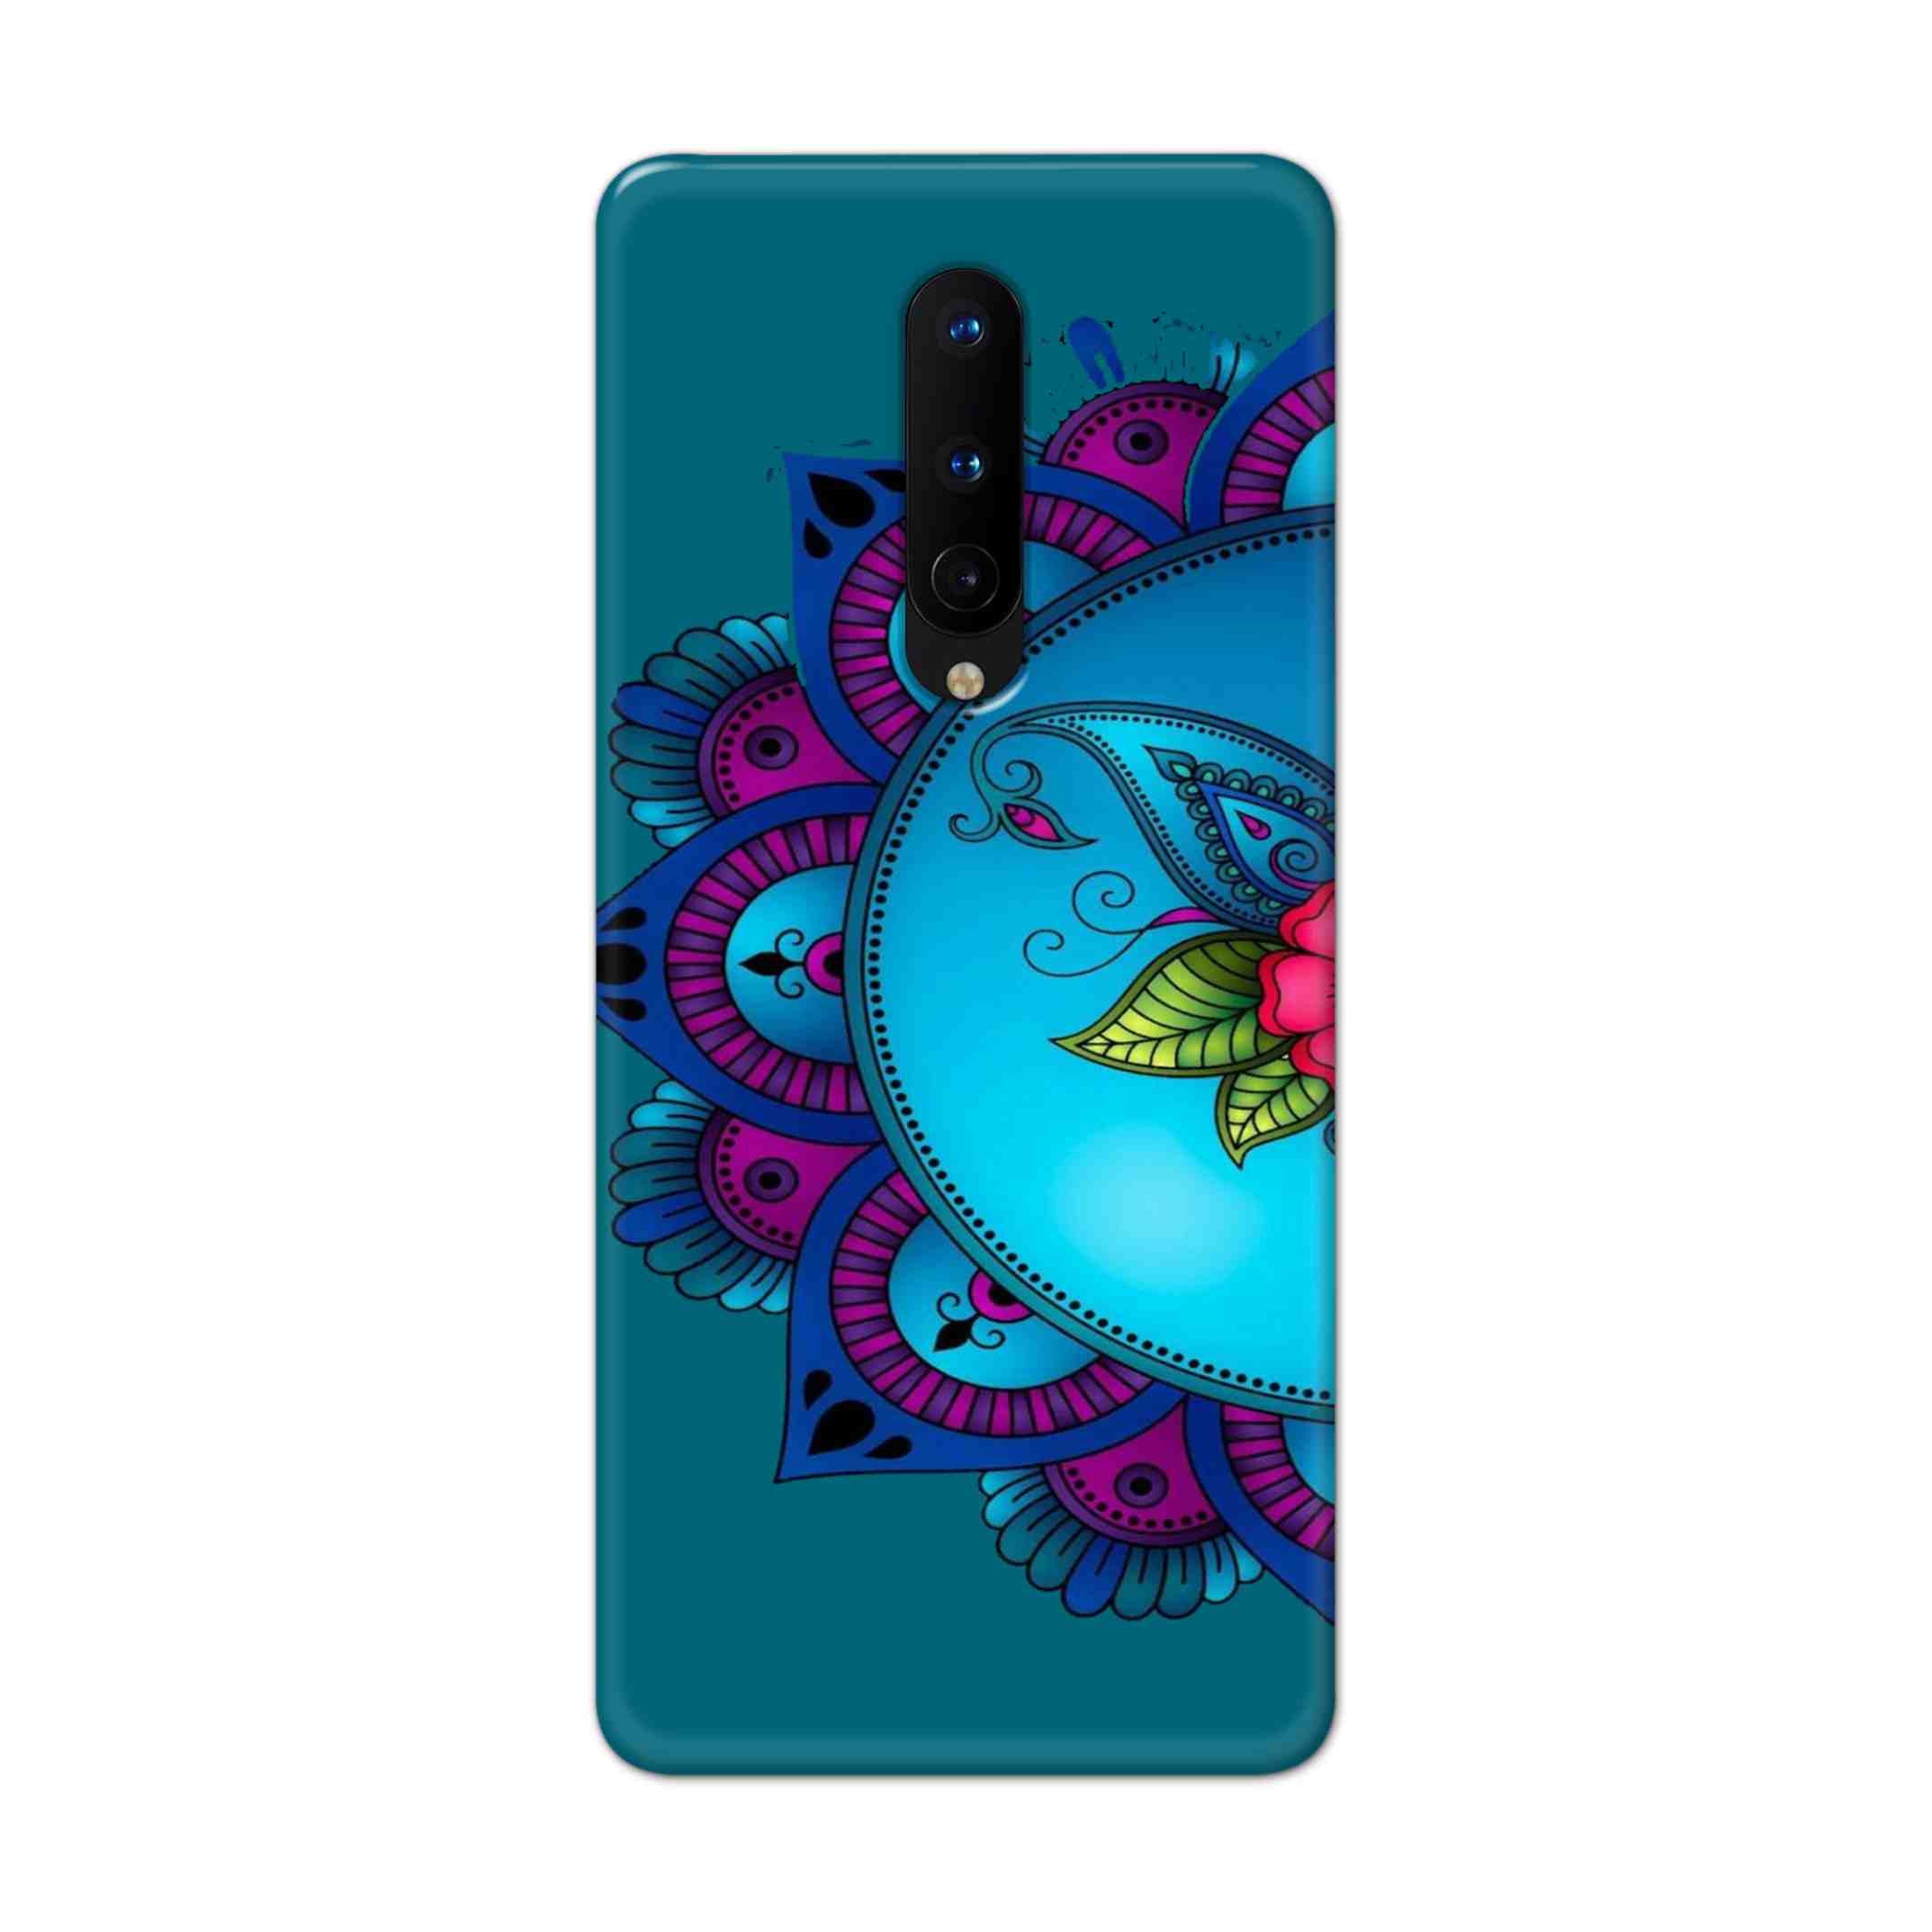 Buy Star Mandala Hard Back Mobile Phone Case Cover For OnePlus 8 Online